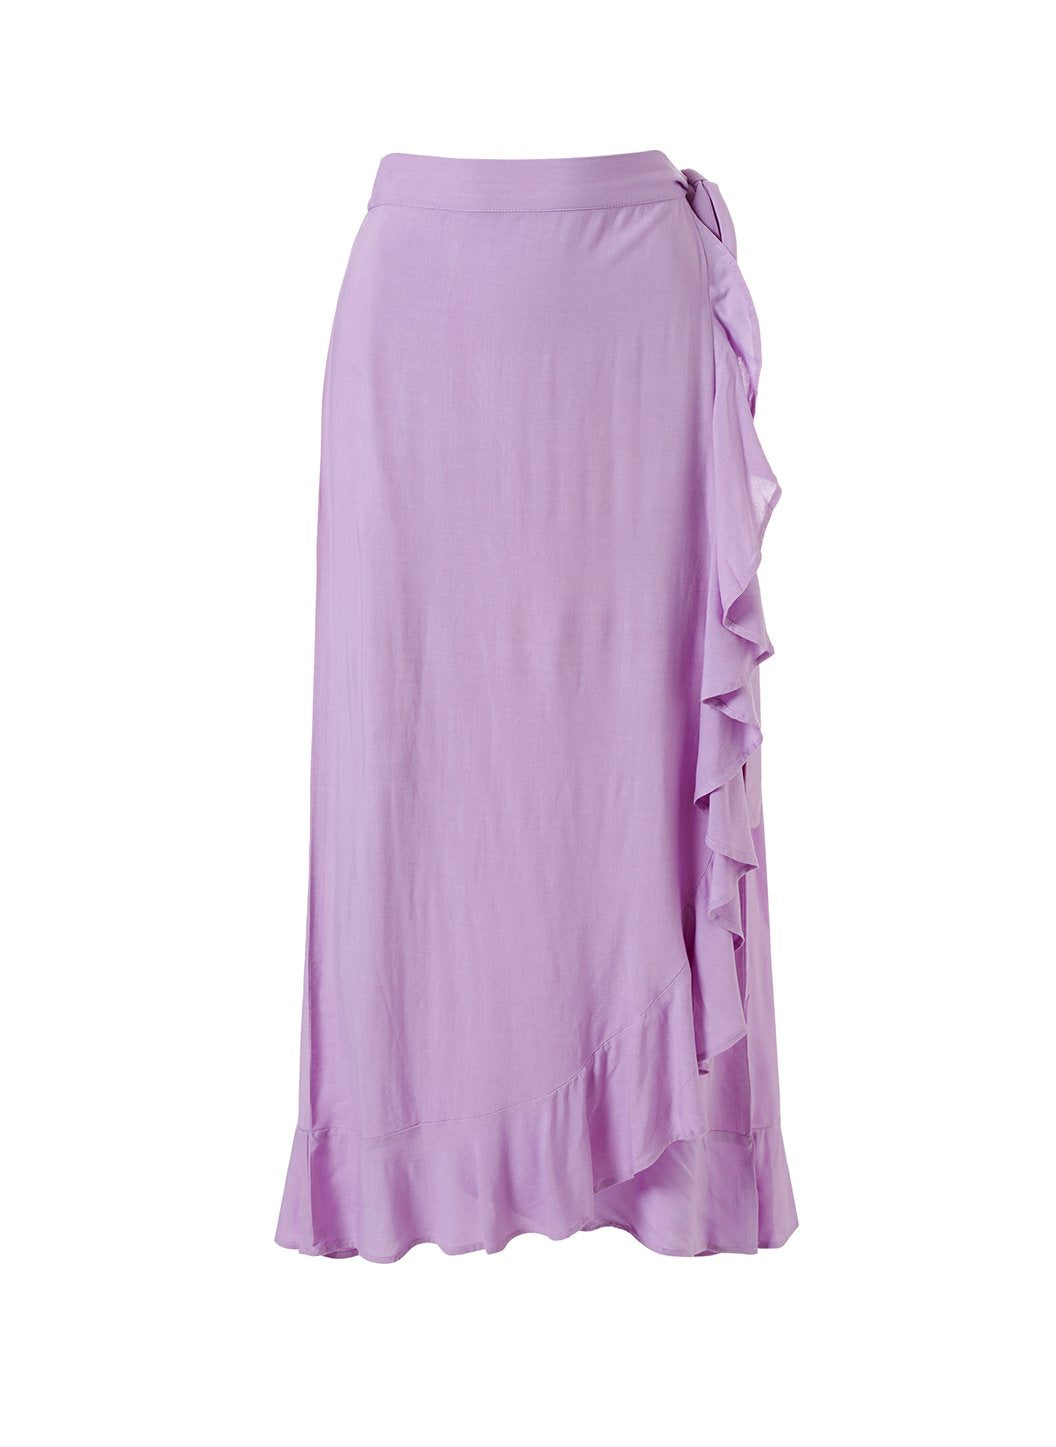 Danni Lilac Skirt Cutout 